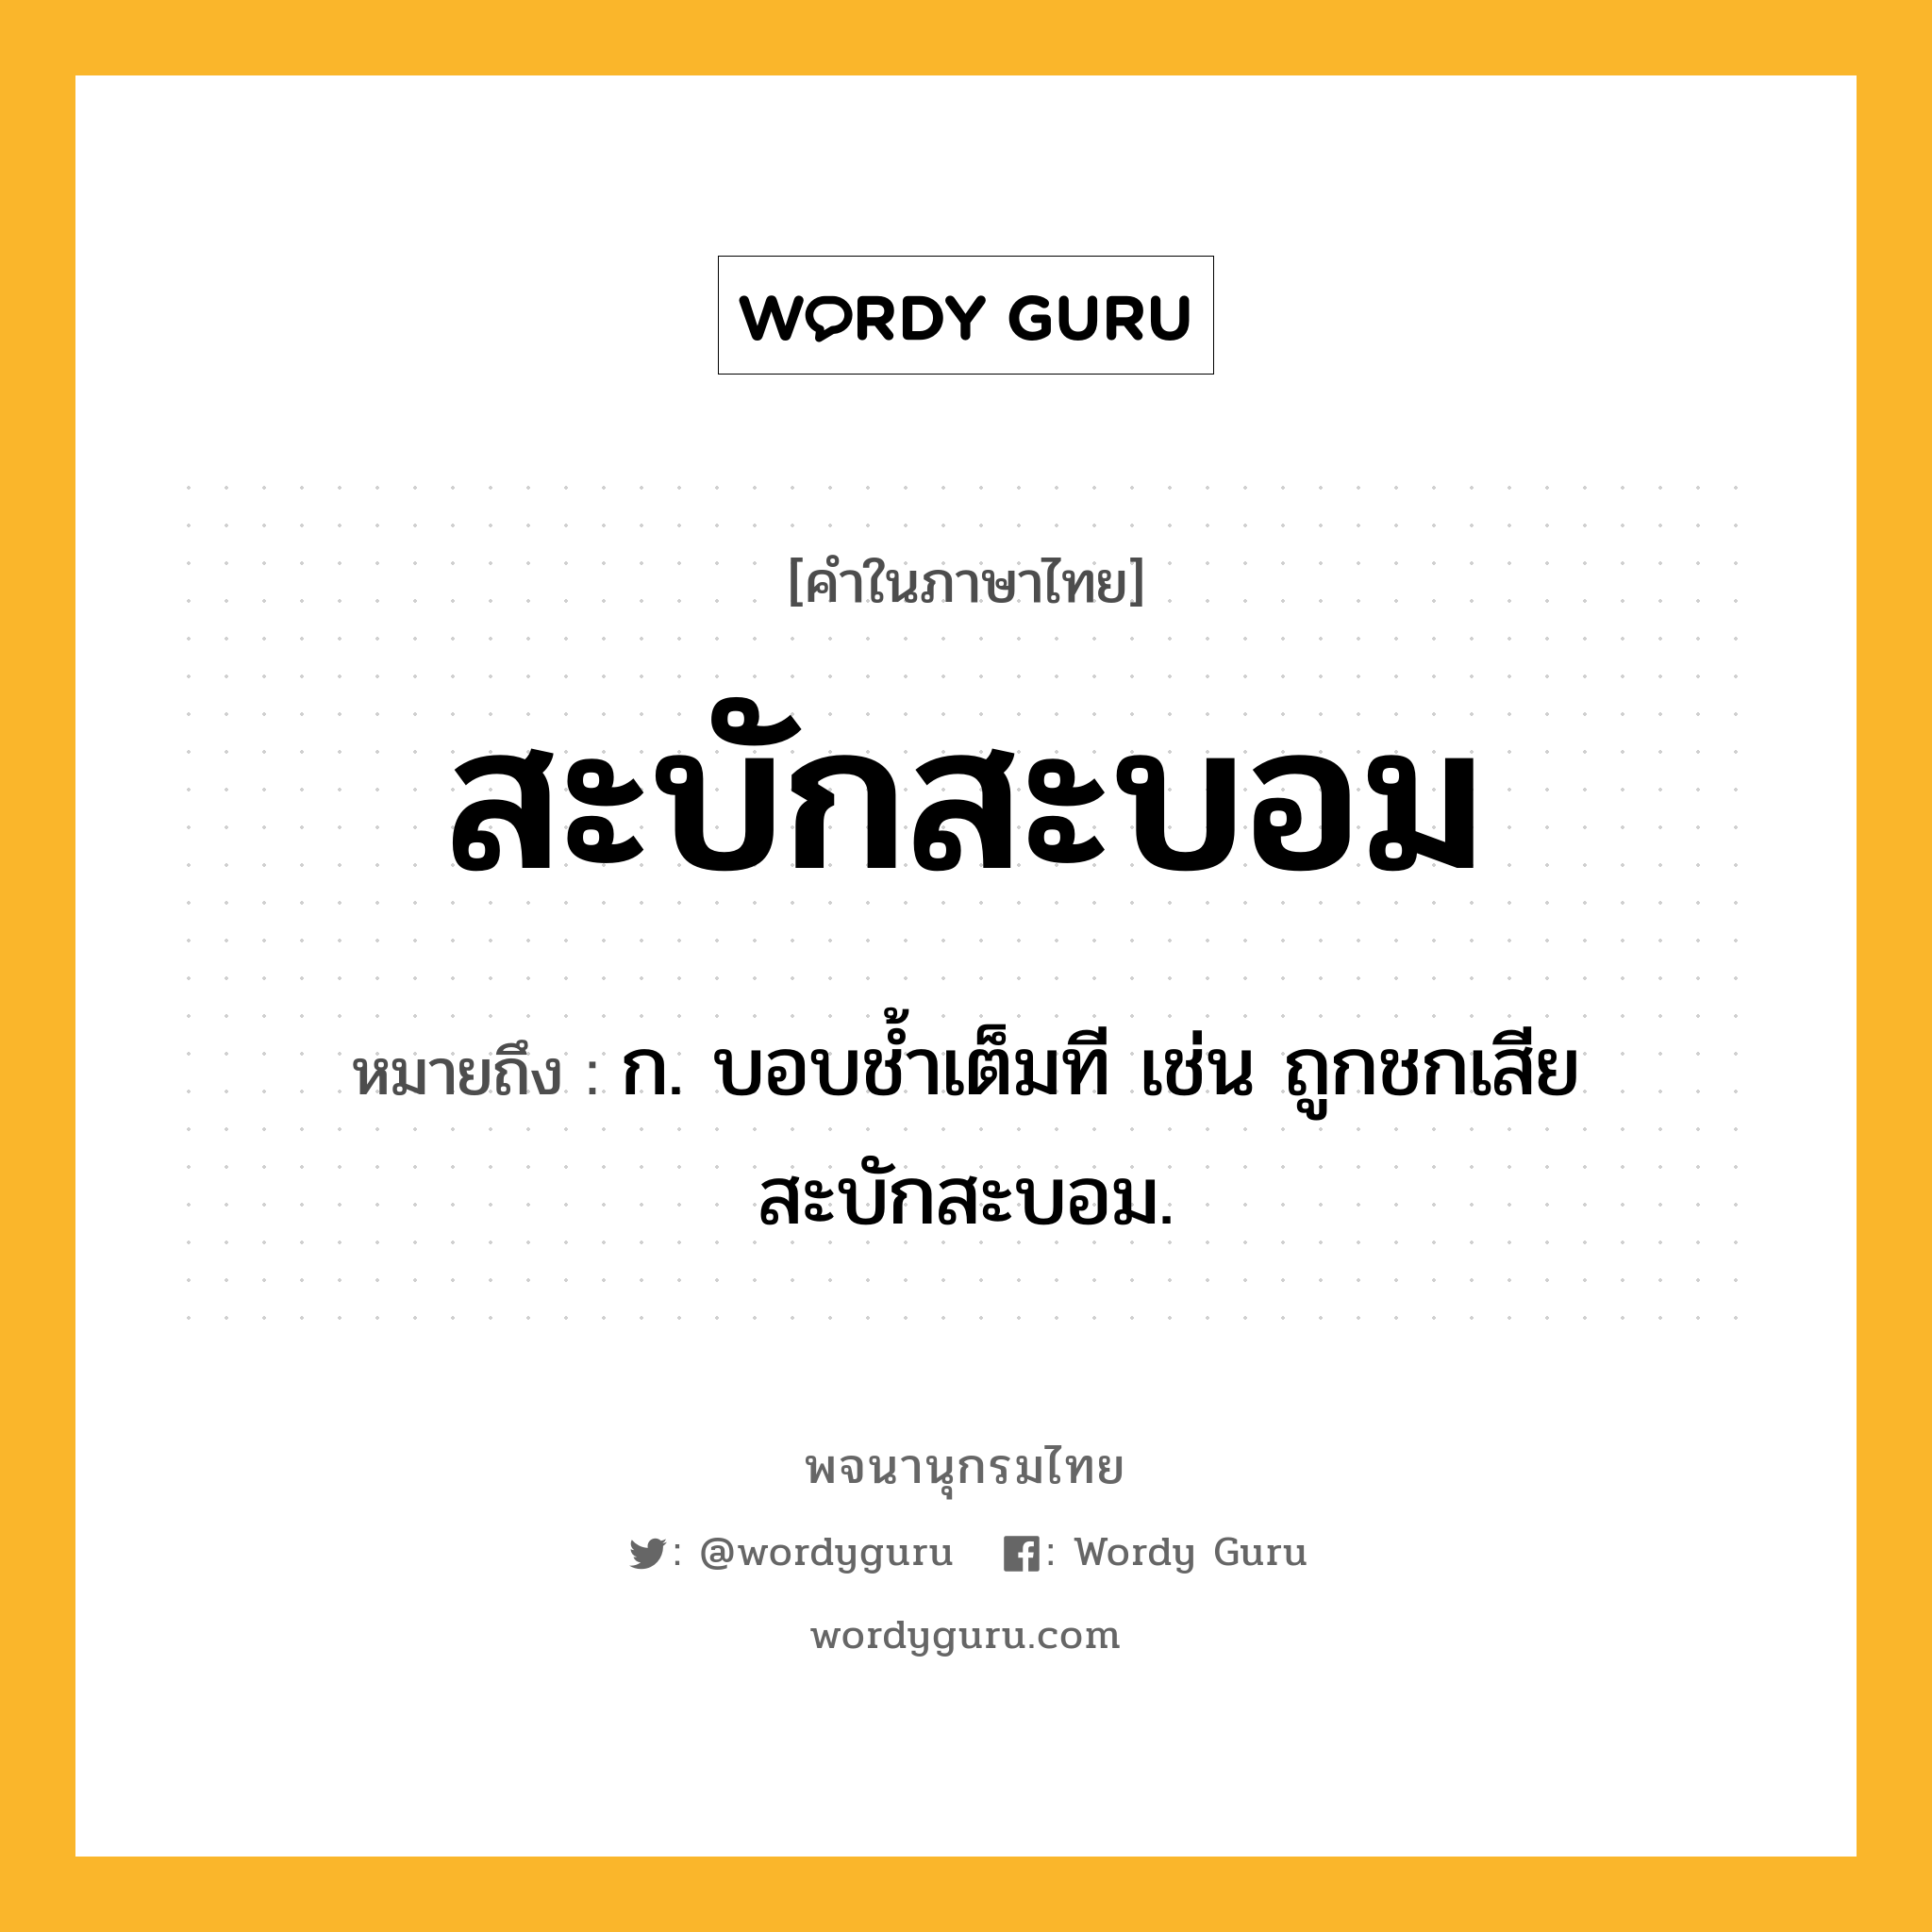 สะบักสะบอม ความหมาย หมายถึงอะไร?, คำในภาษาไทย สะบักสะบอม หมายถึง ก. บอบชํ้าเต็มที เช่น ถูกชกเสียสะบักสะบอม.